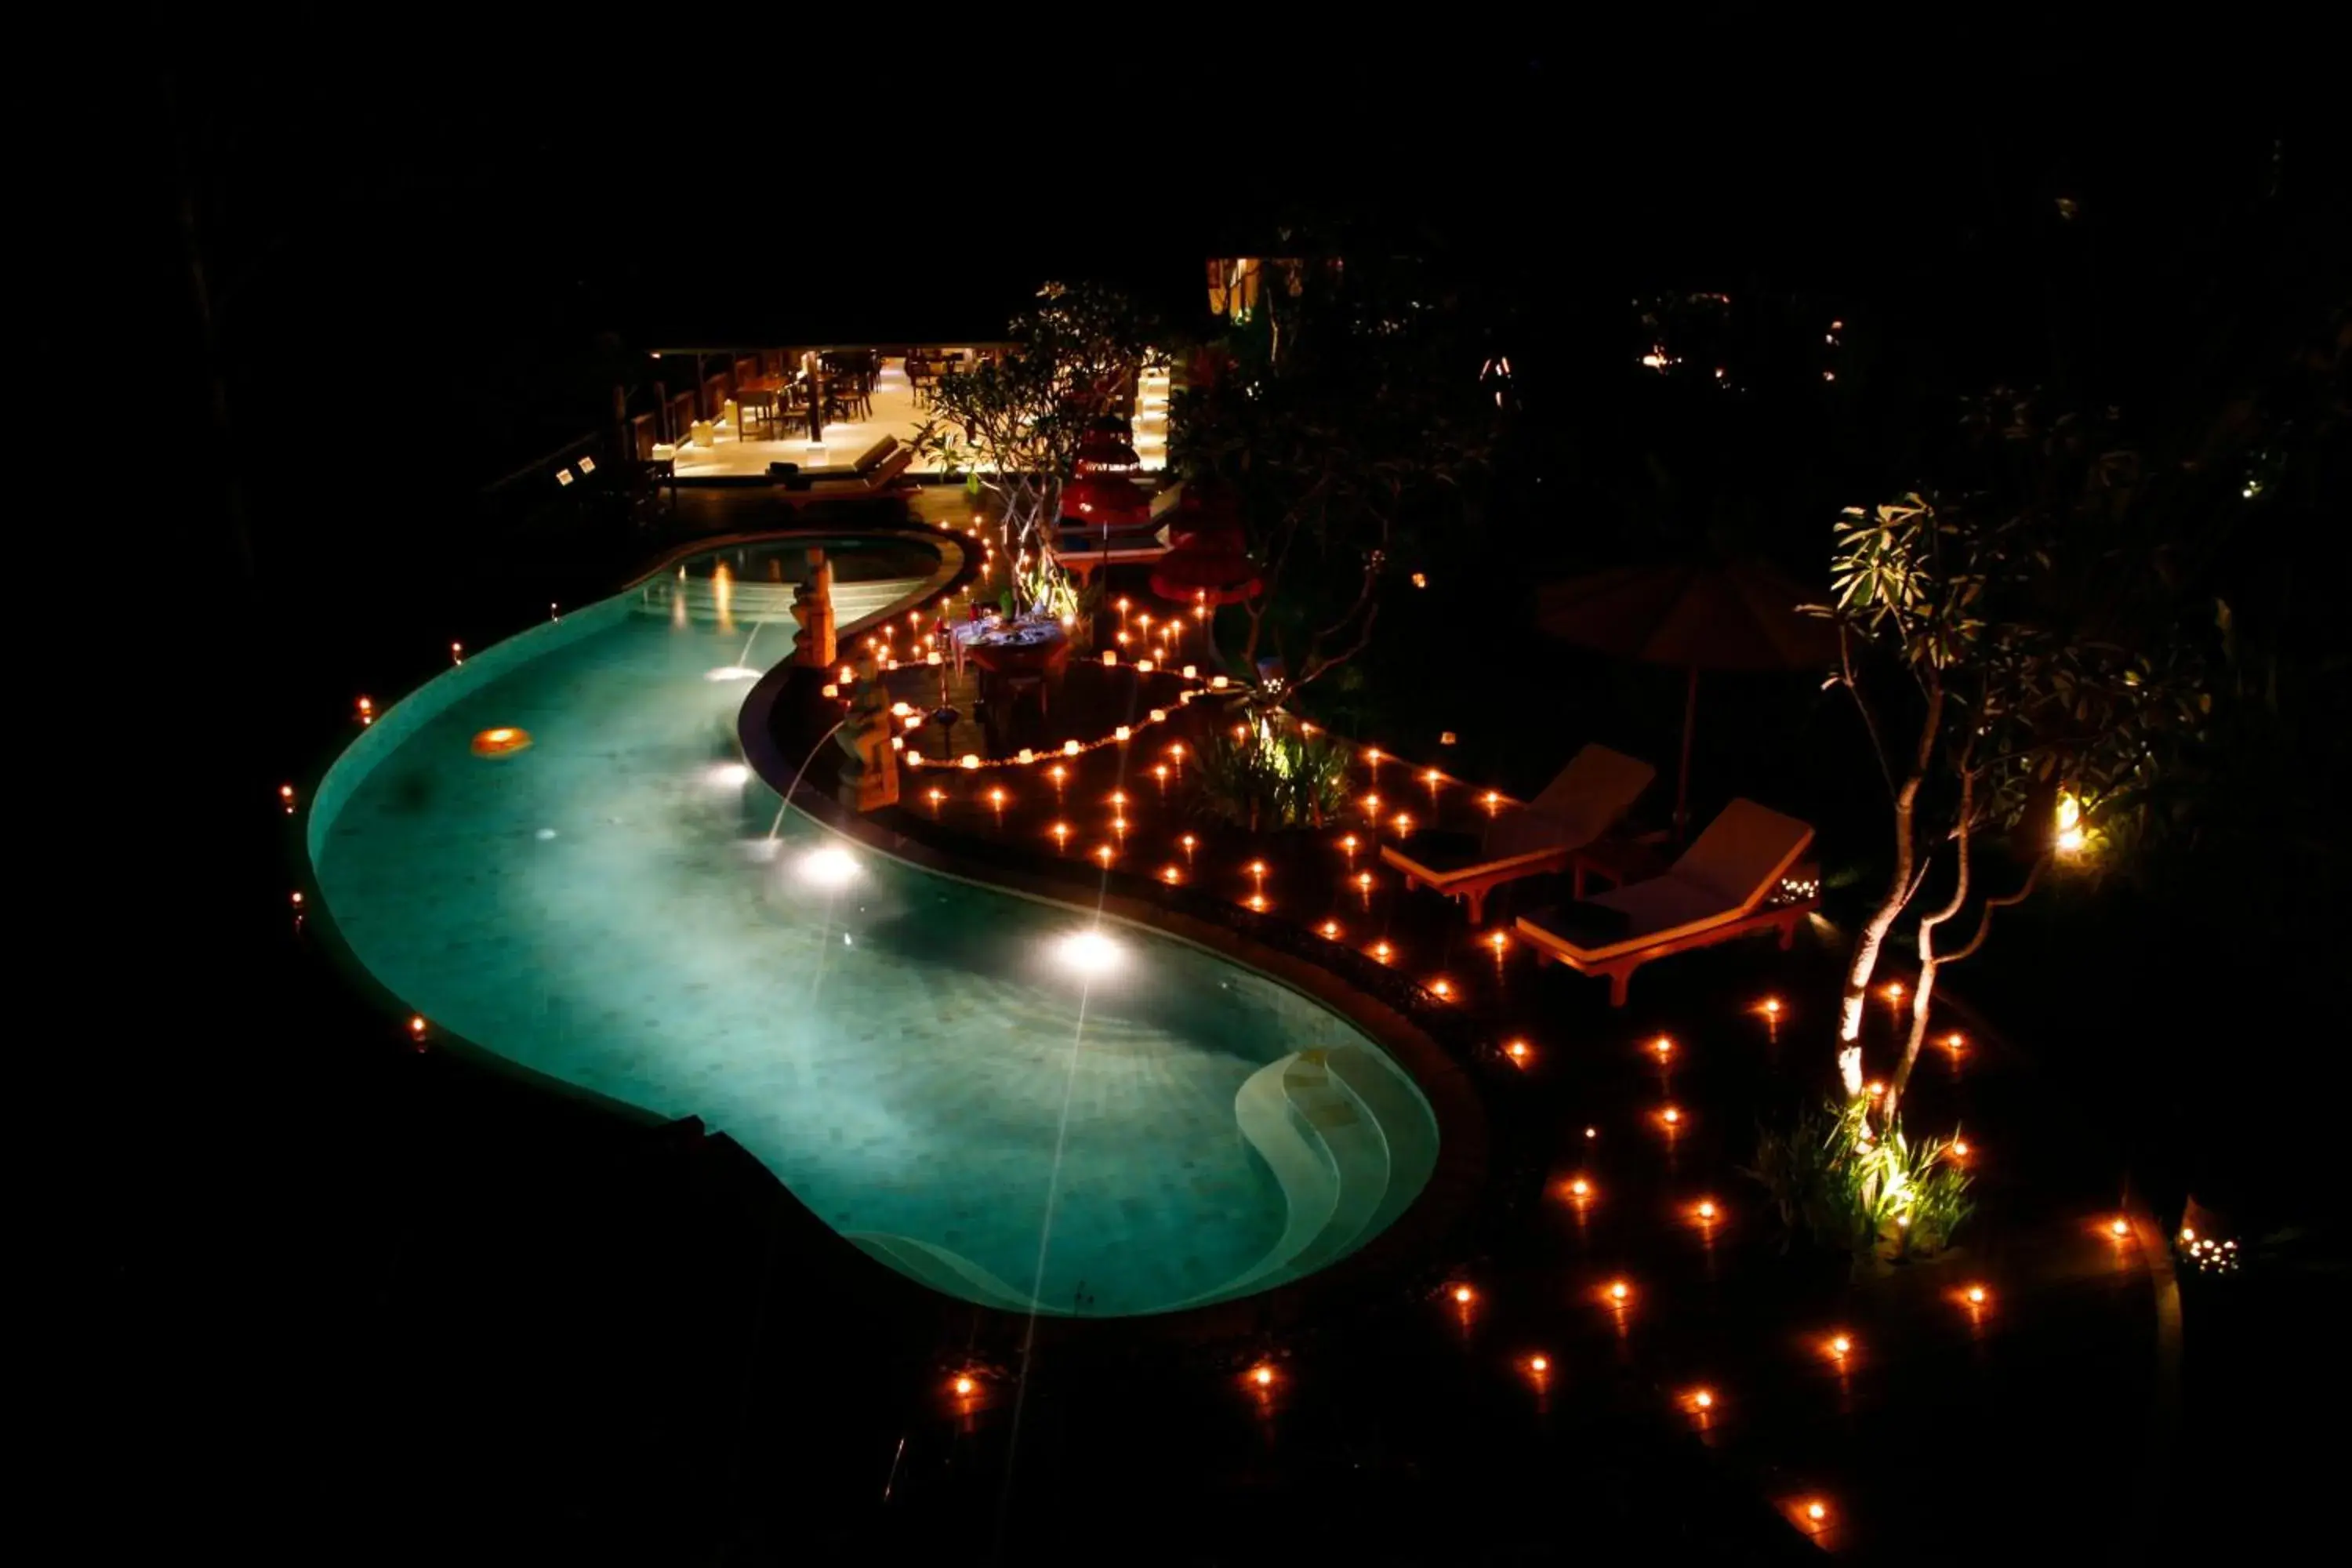 Night, Pool View in BeingSattvaa Luxury Ubud - CHSE Certified